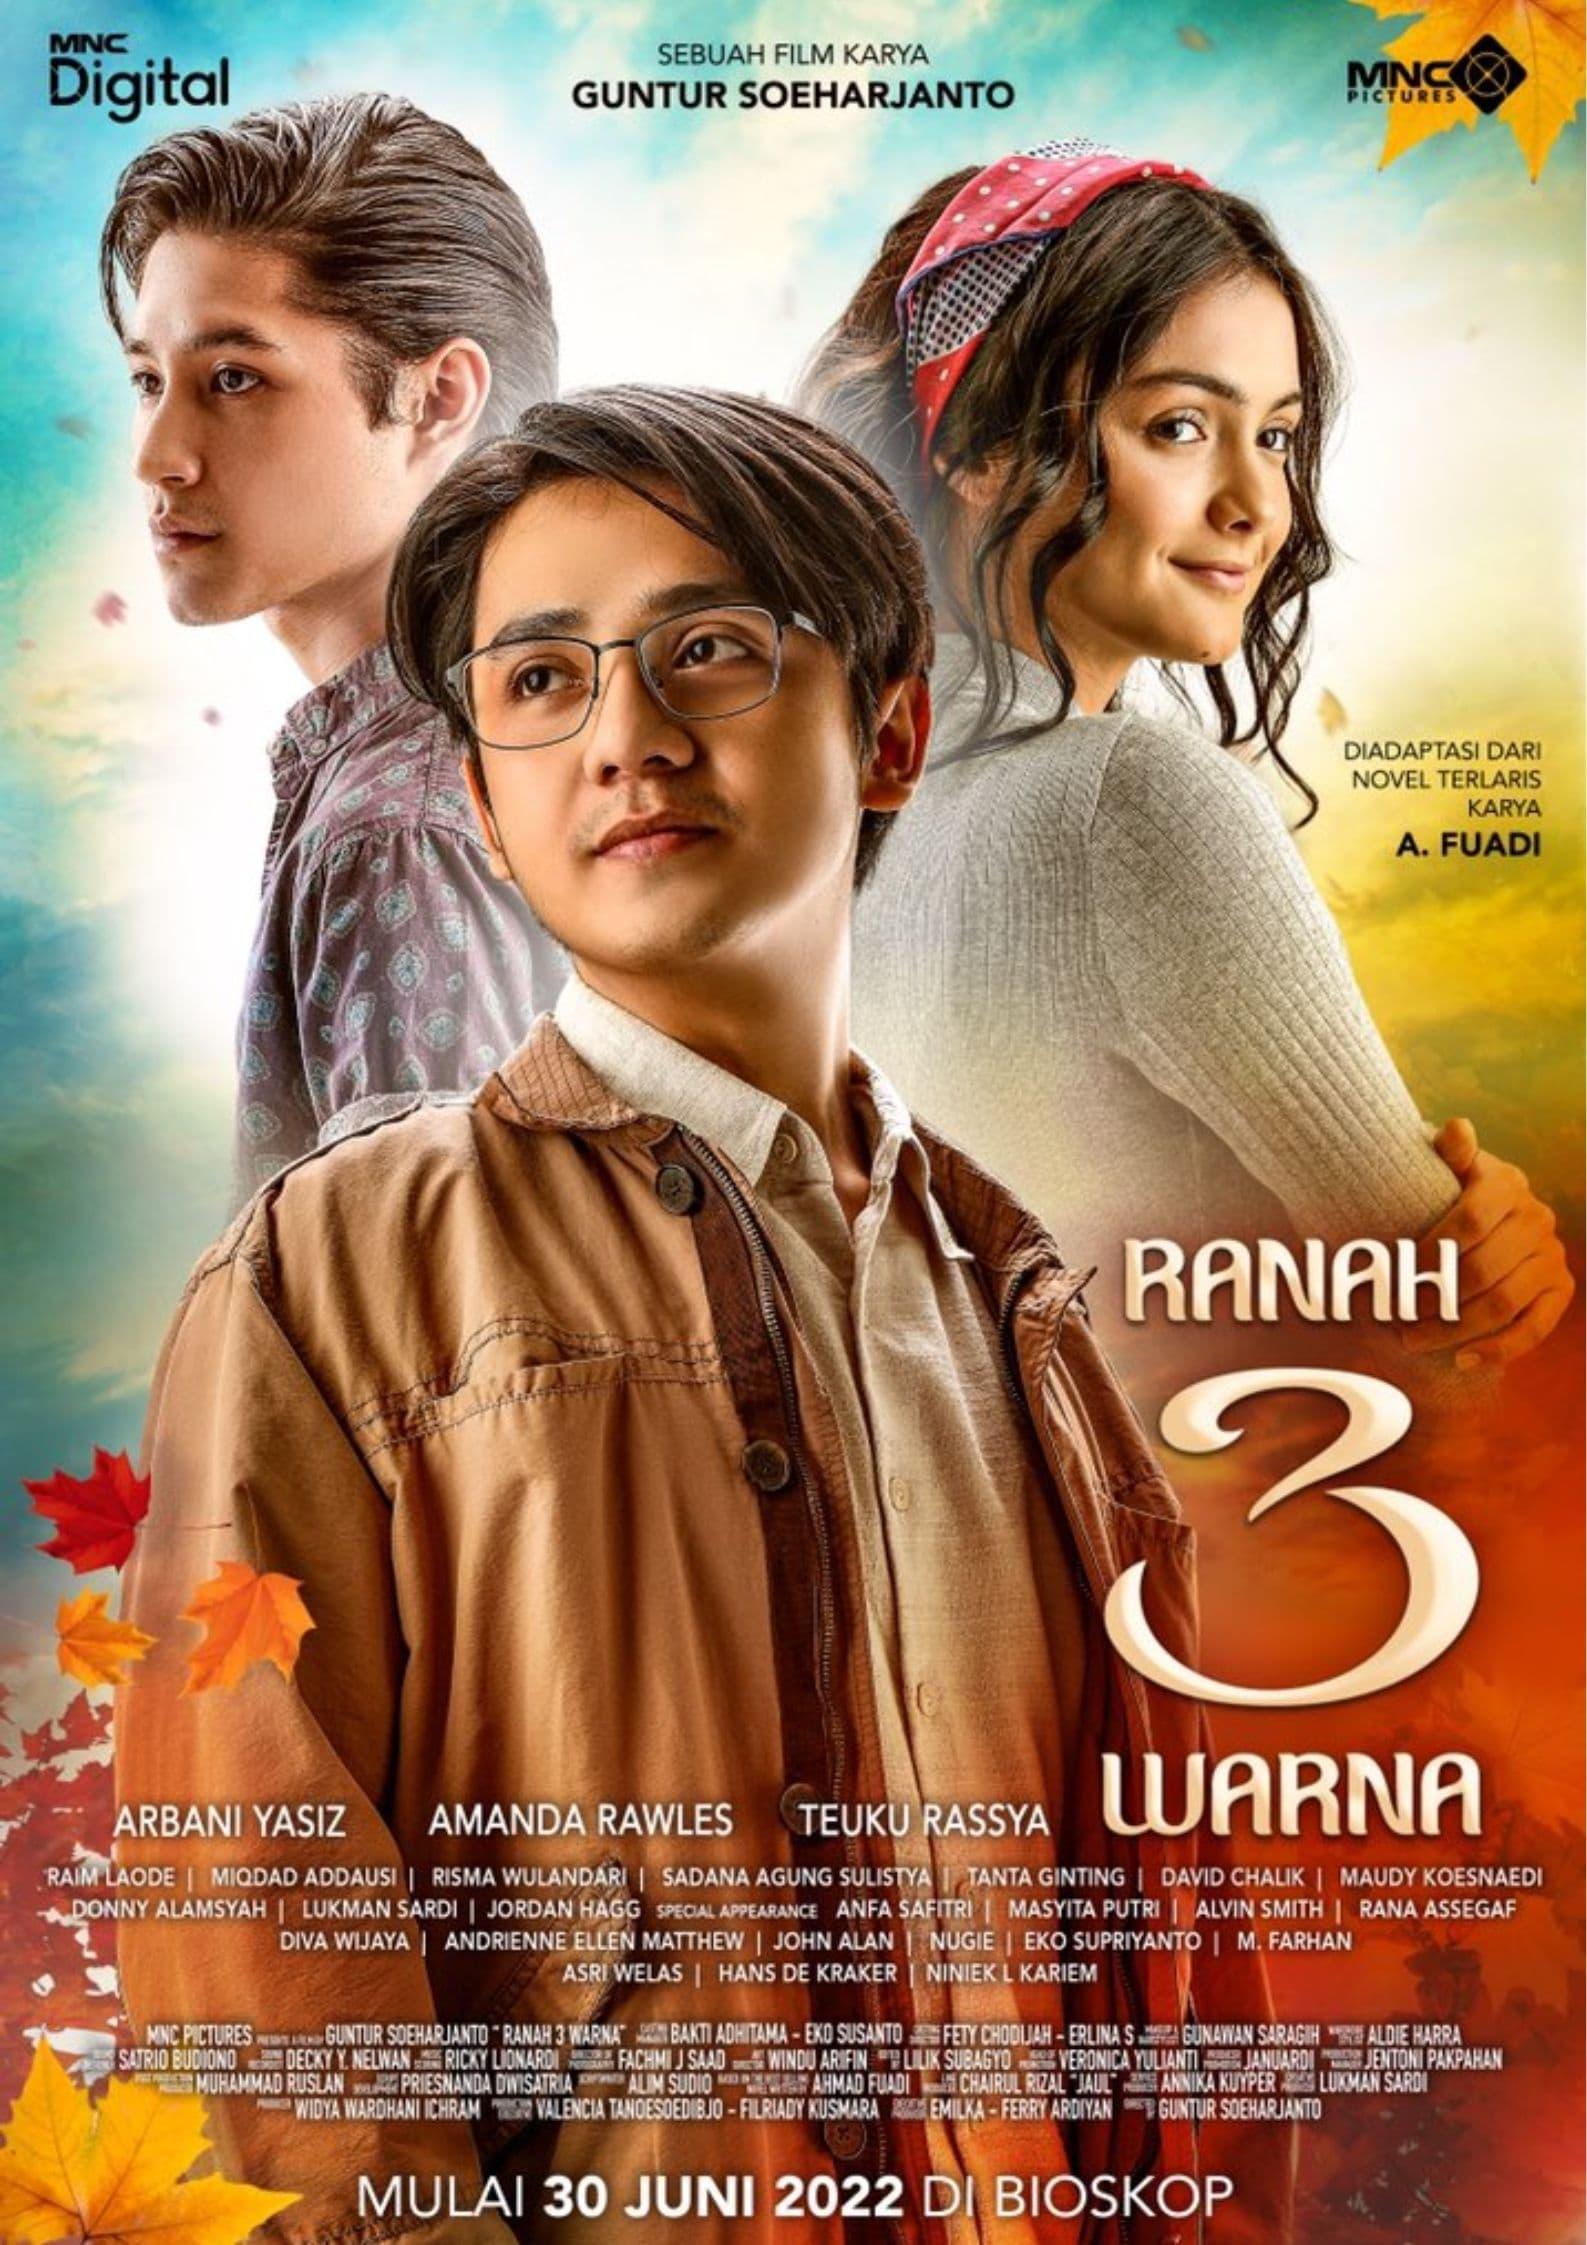 Ranah 3 Warna poster